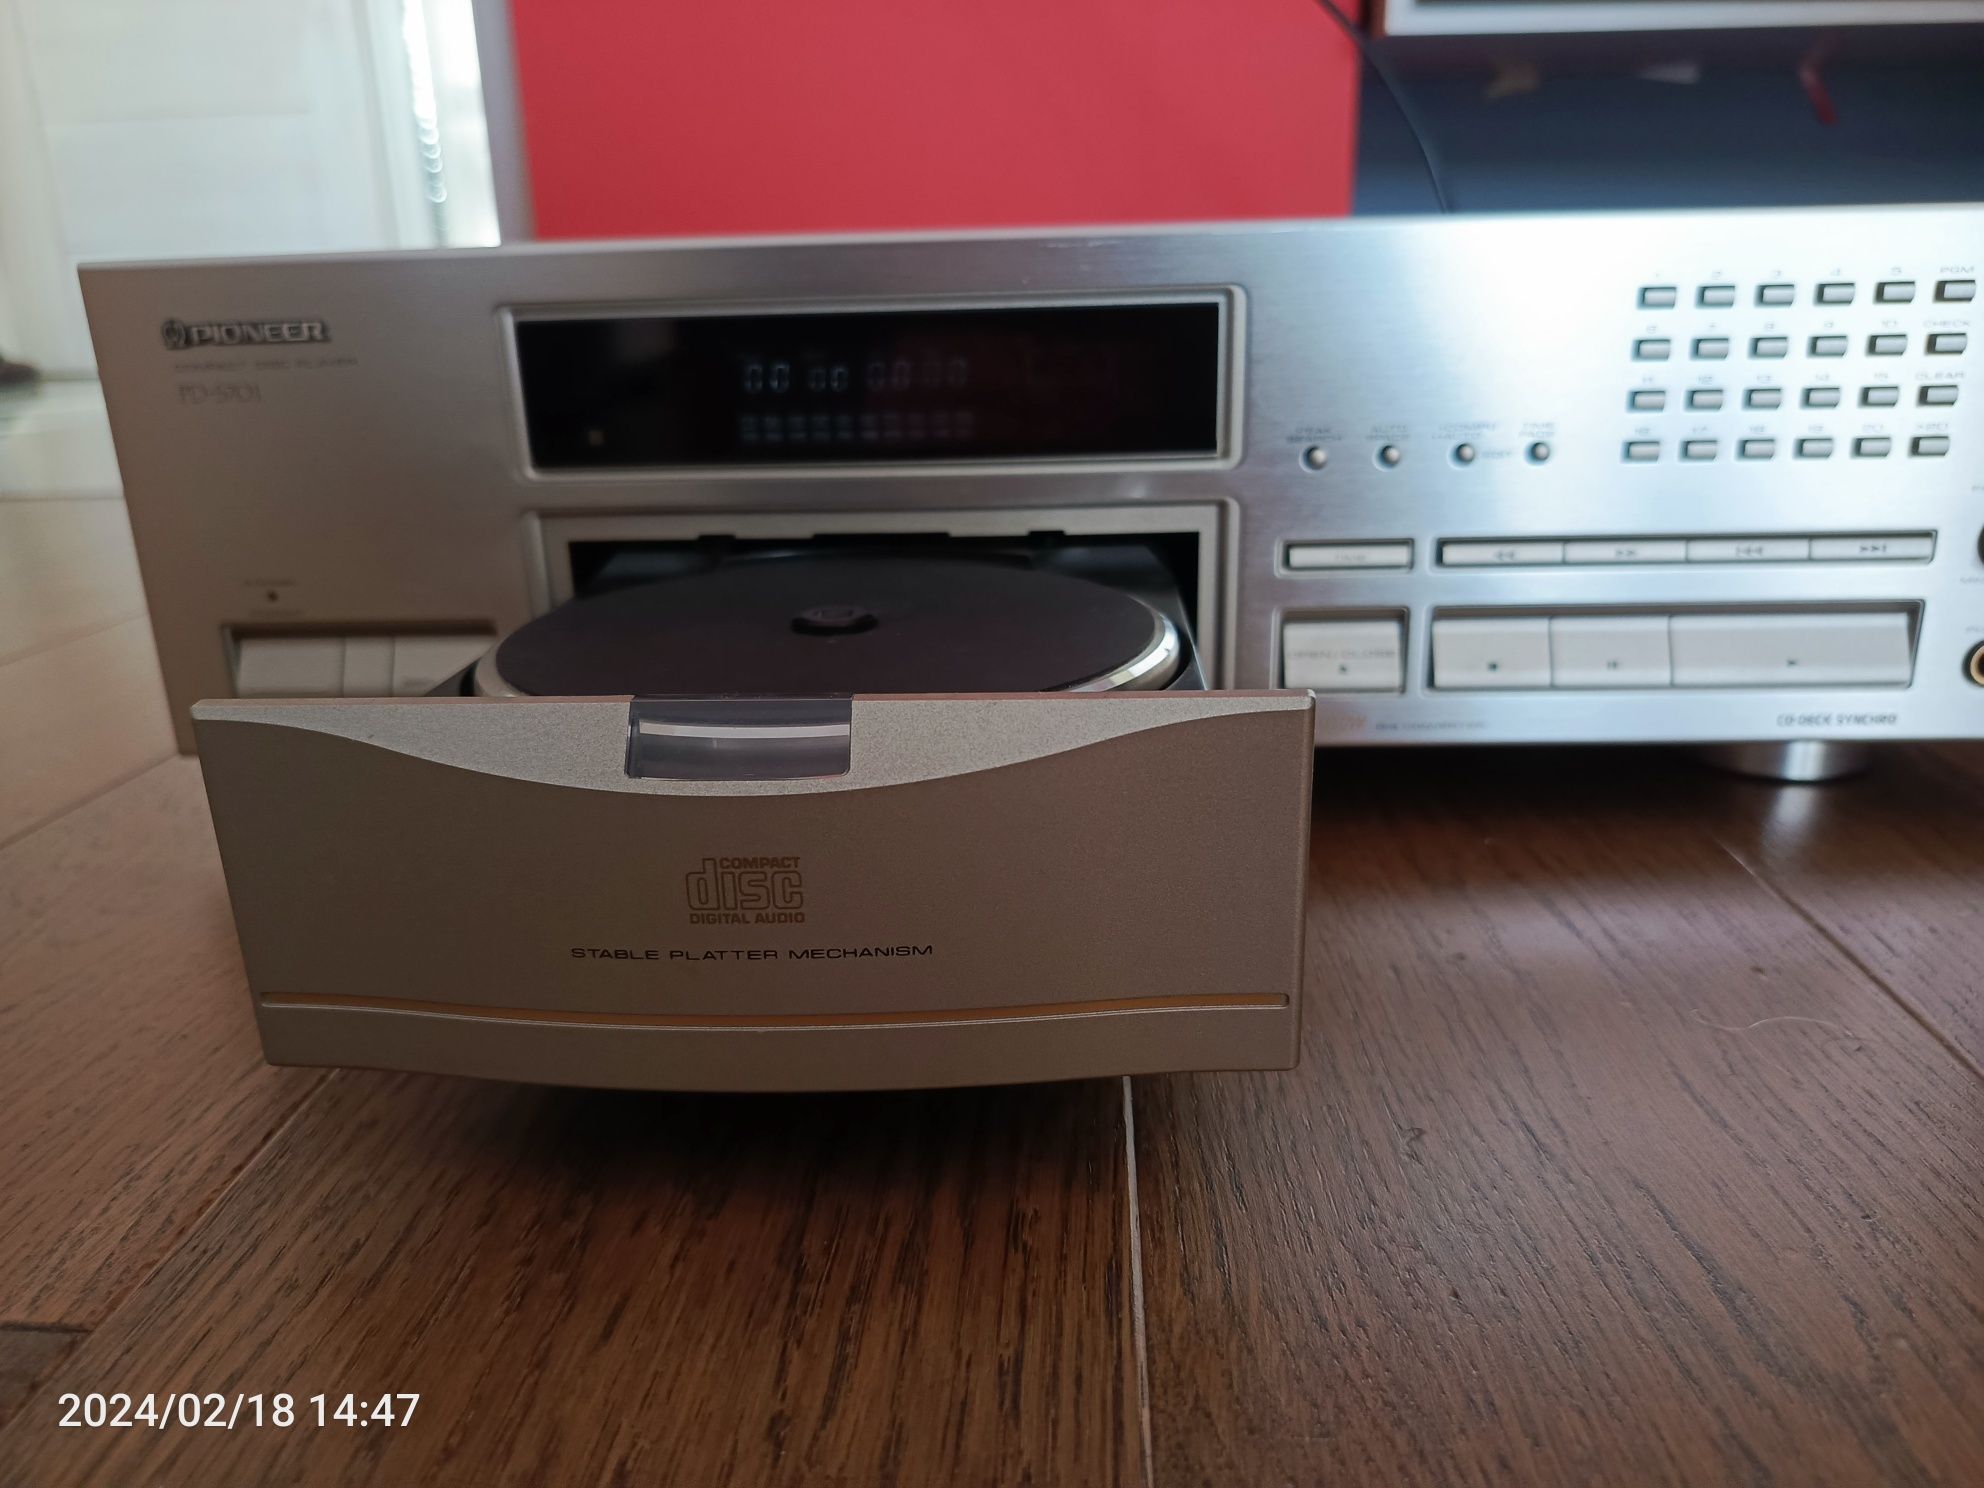 Pioneer PD-S701 odtwarzacz CD